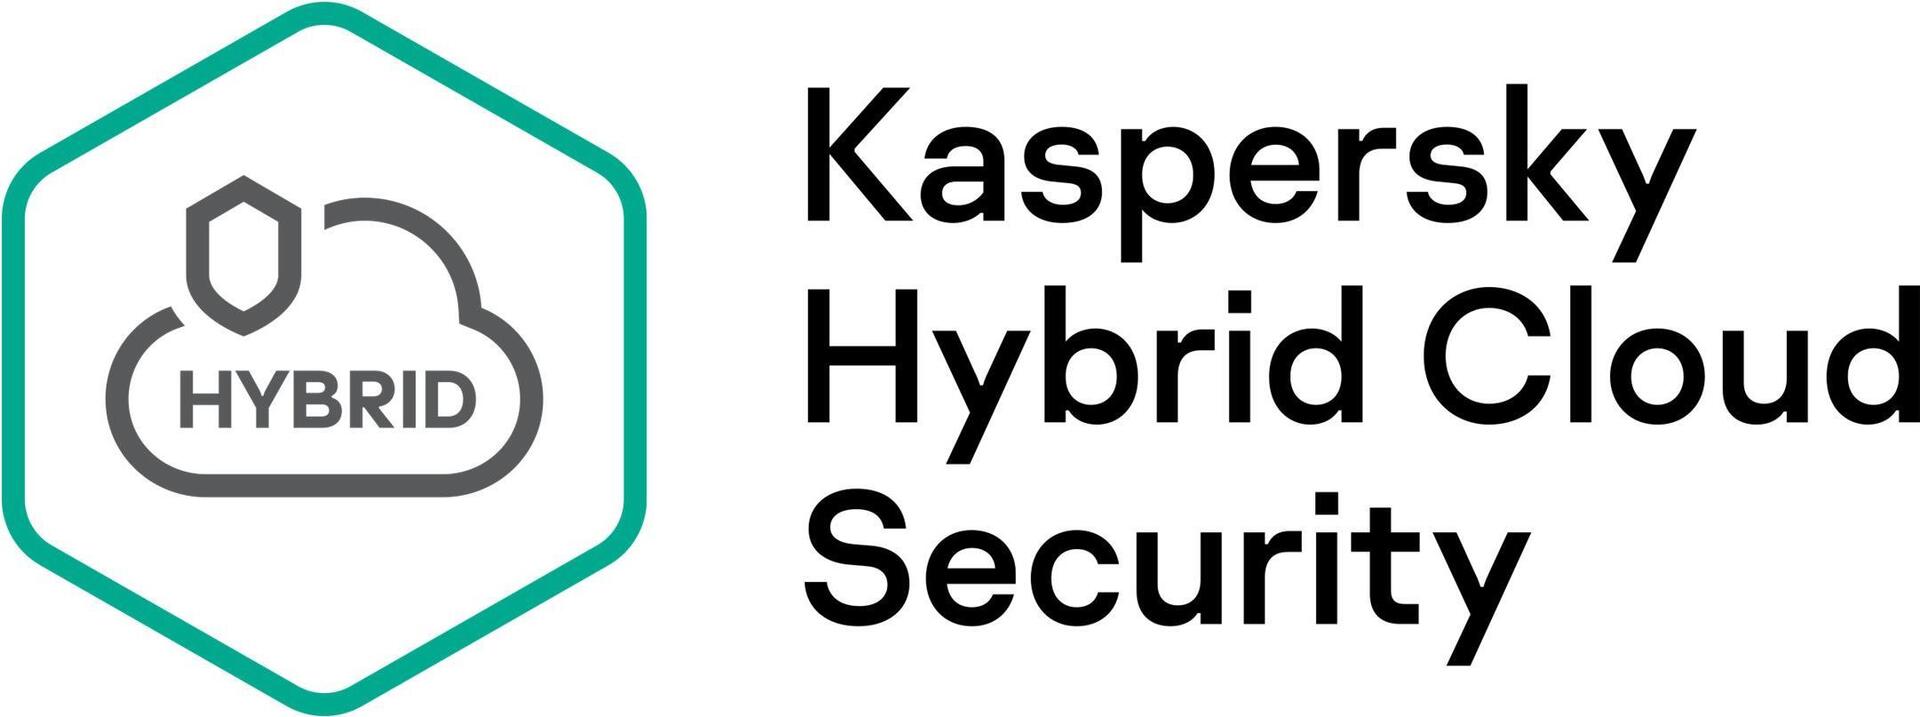 Kaspersky Hybrid Cloud Security (KL4554XARF9)